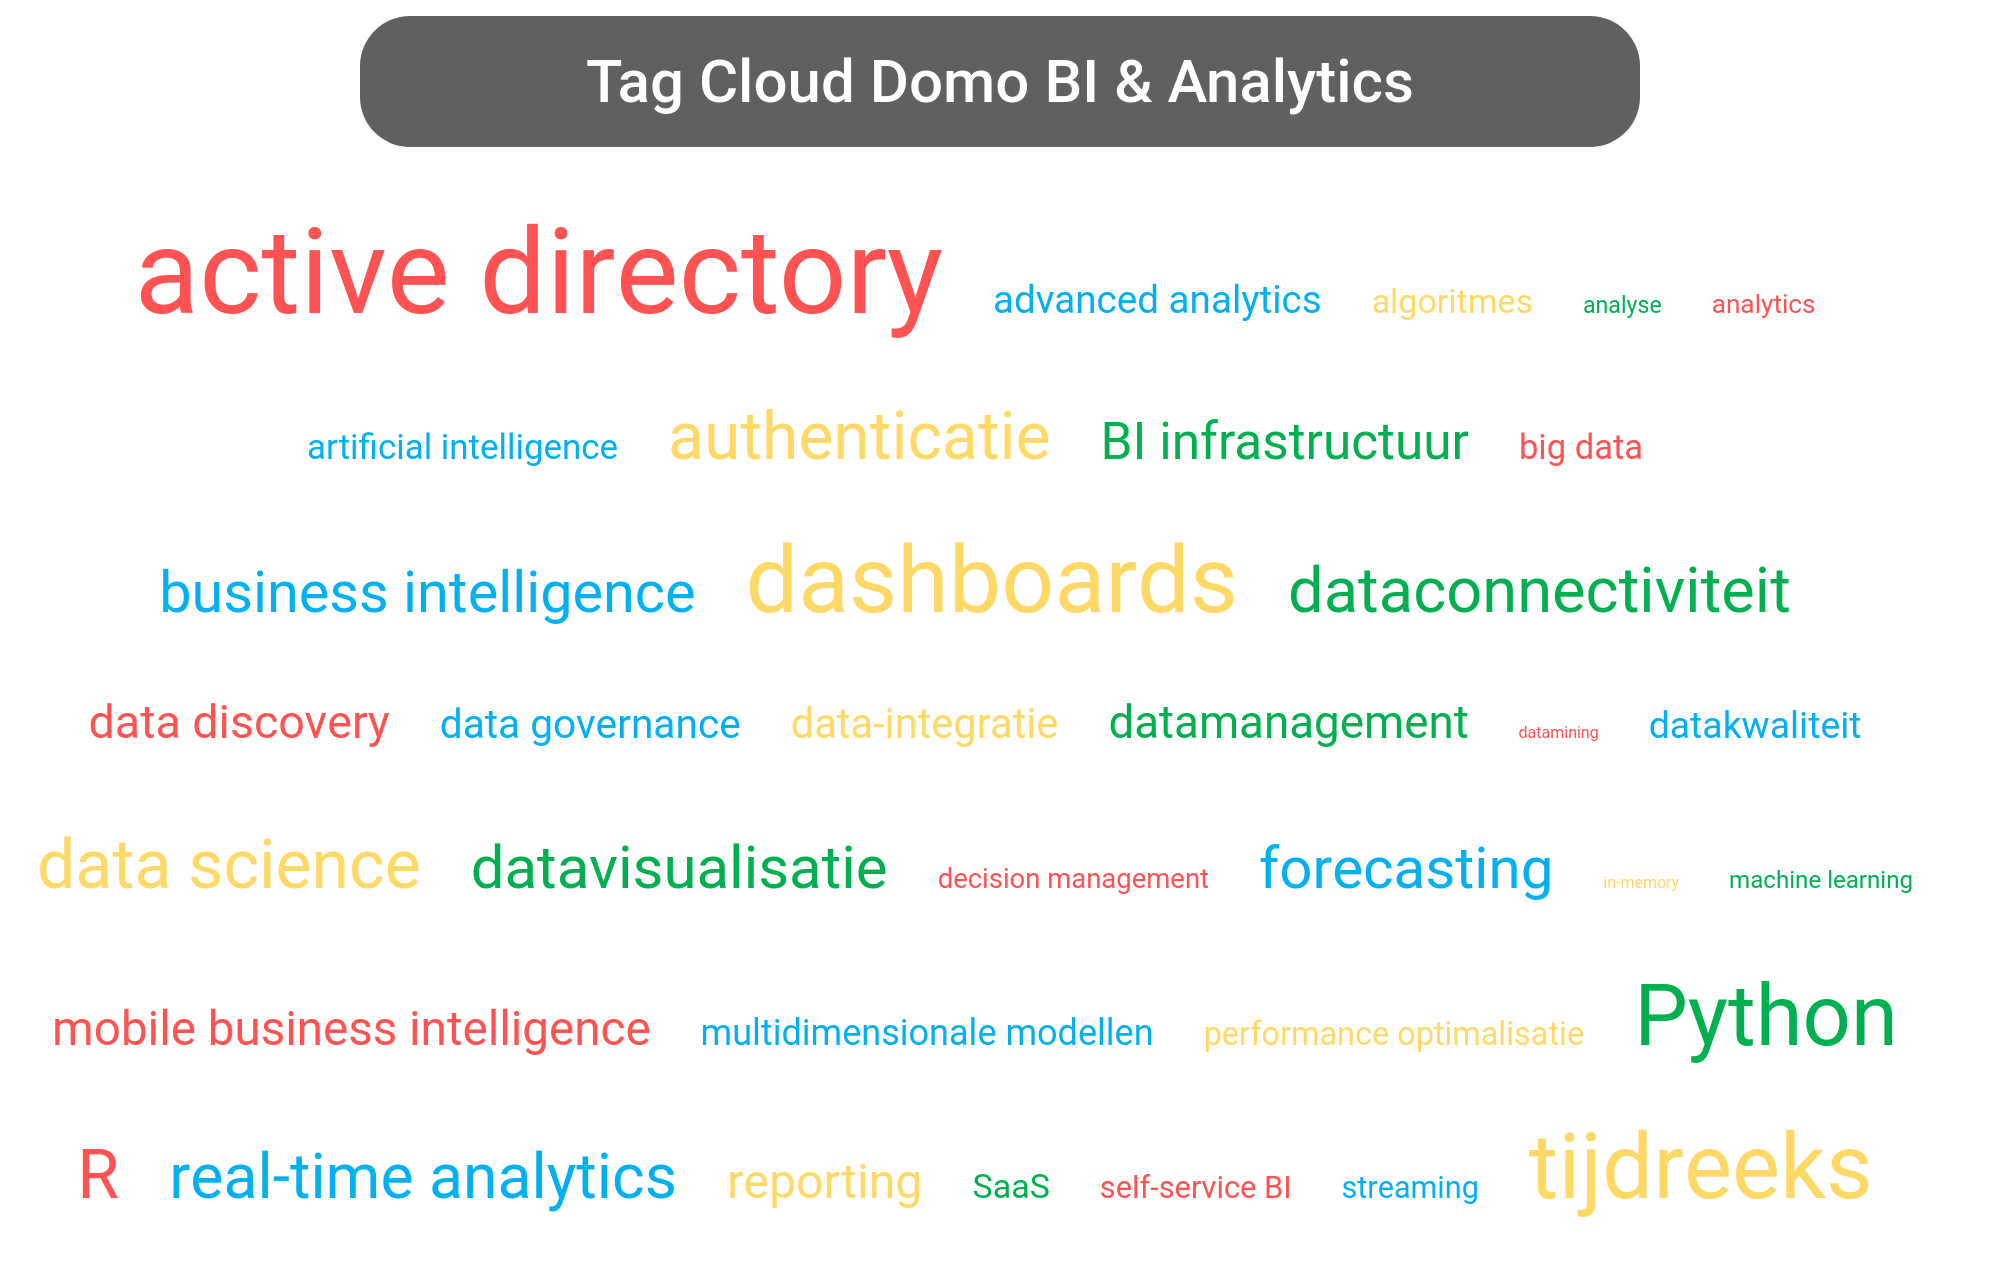 Tag cloud van Domo Platform tools.